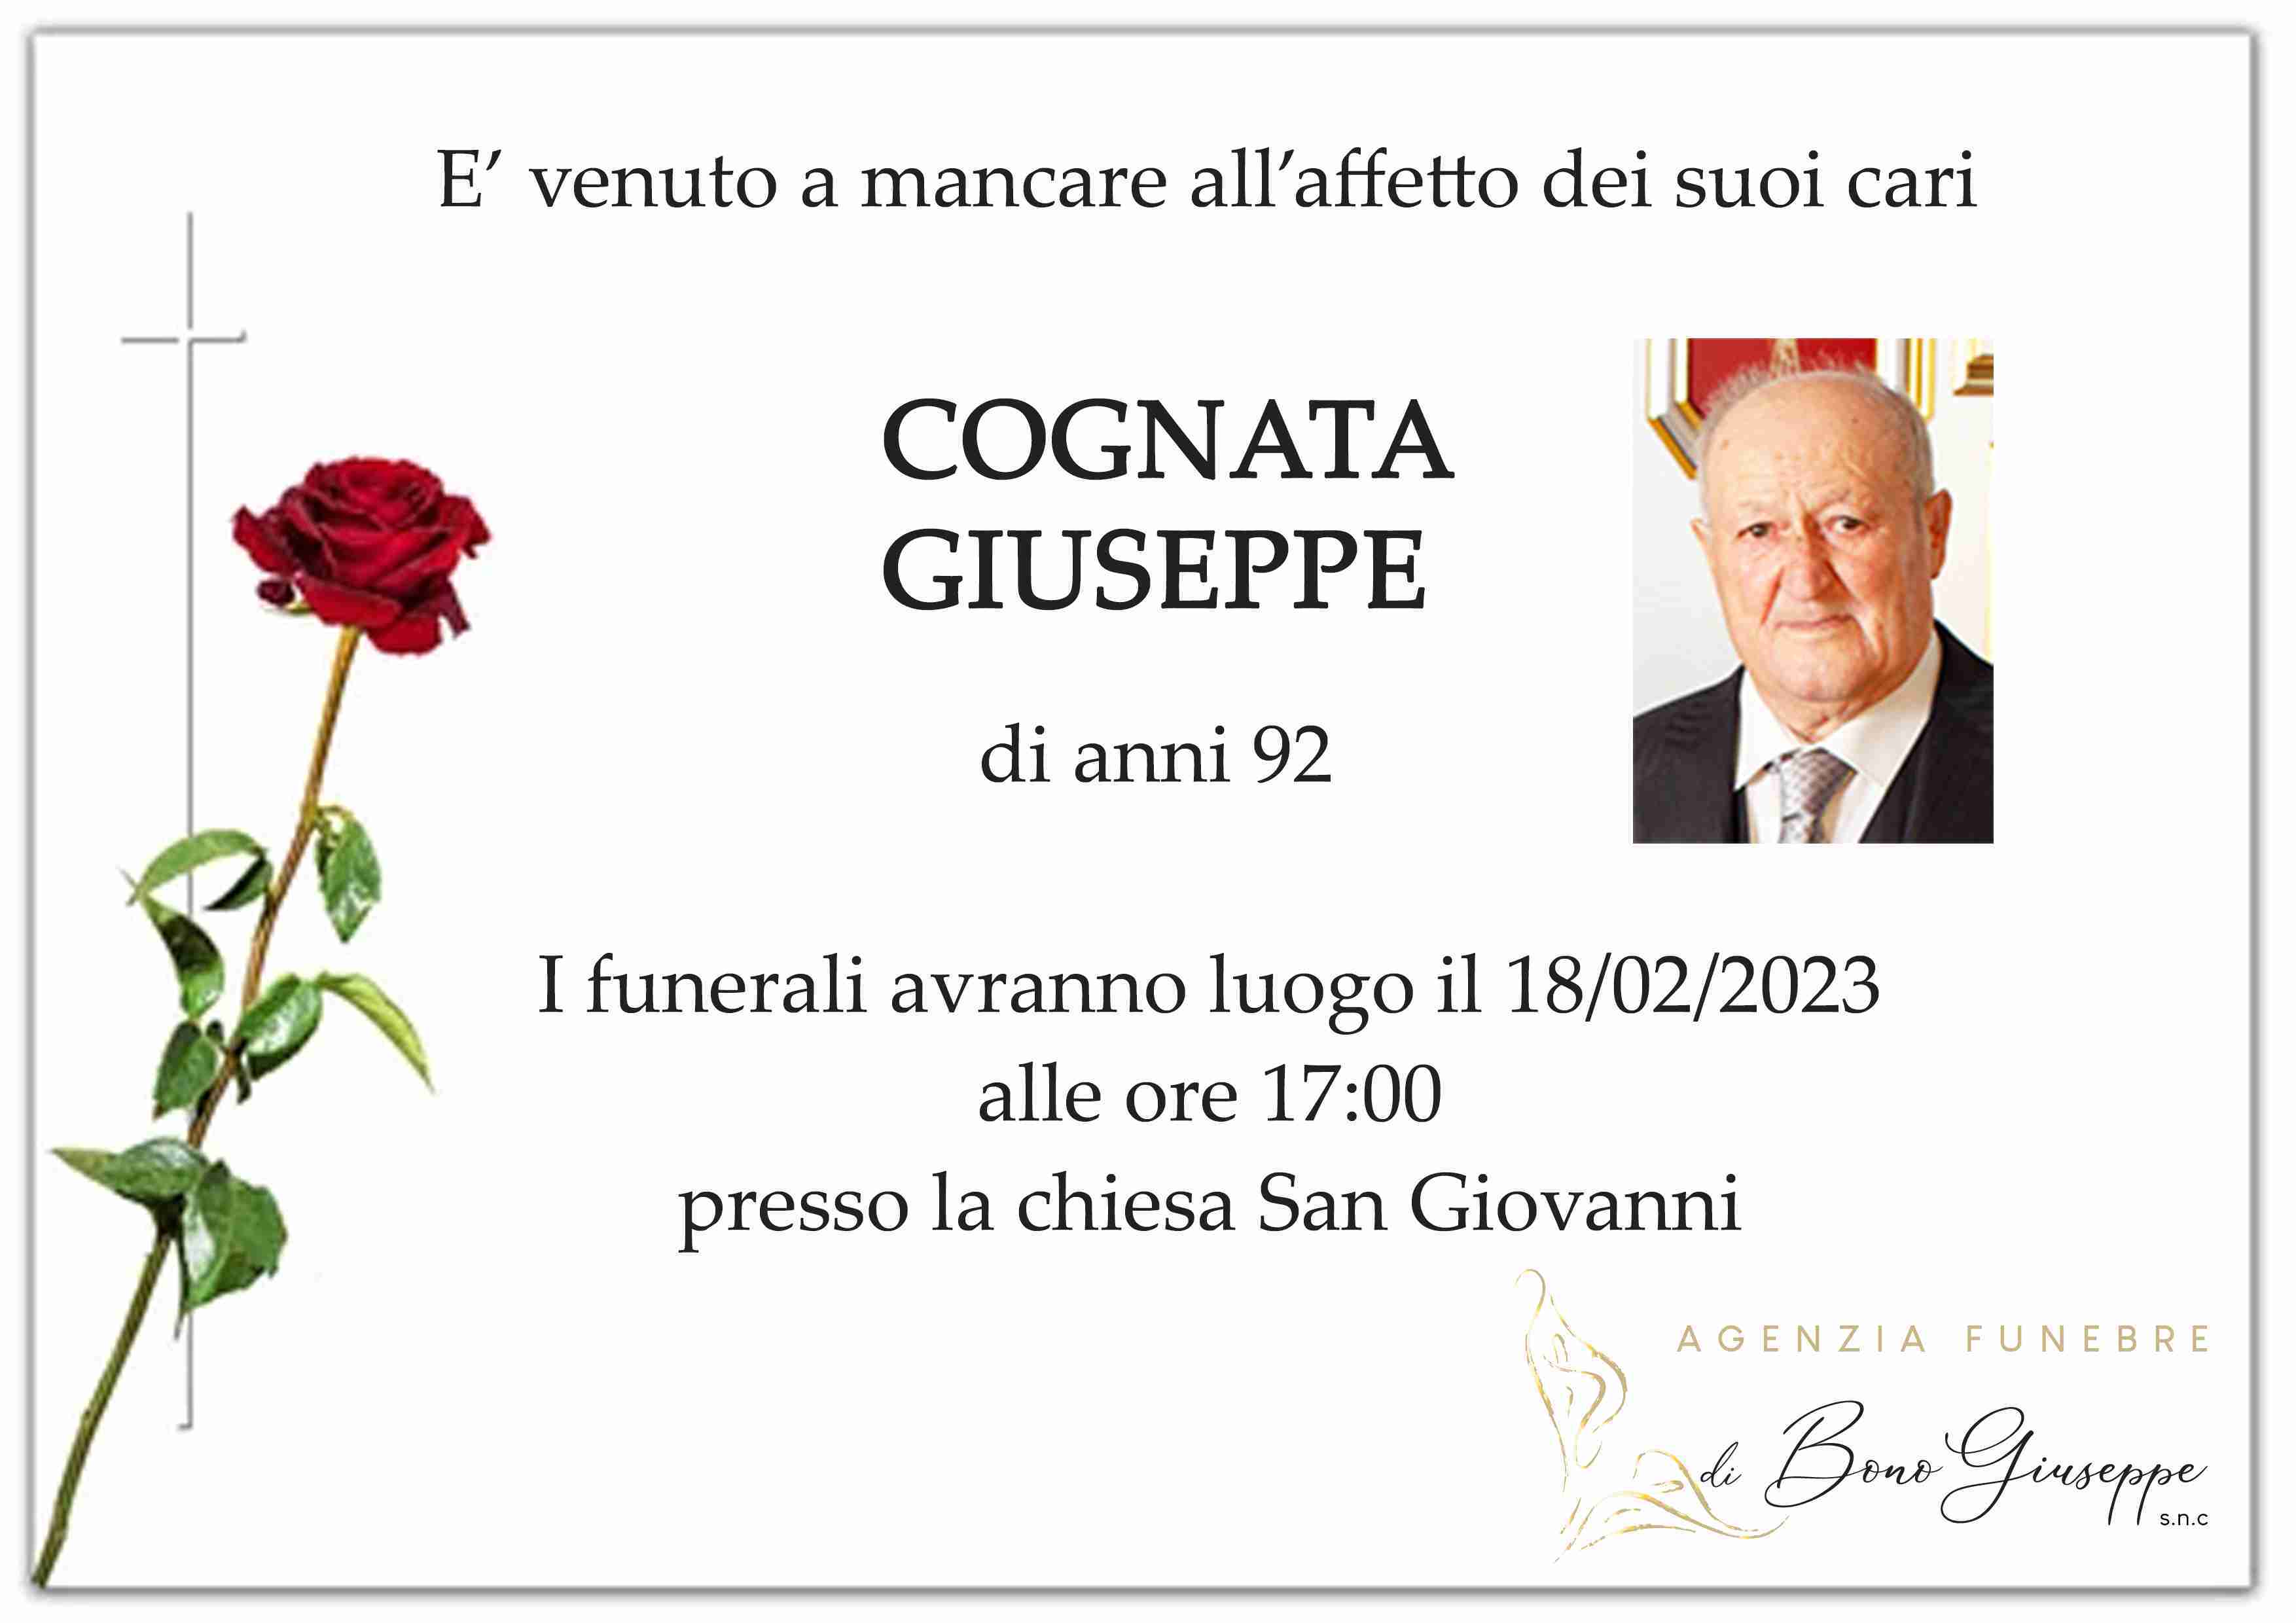 Giuseppe Cognata